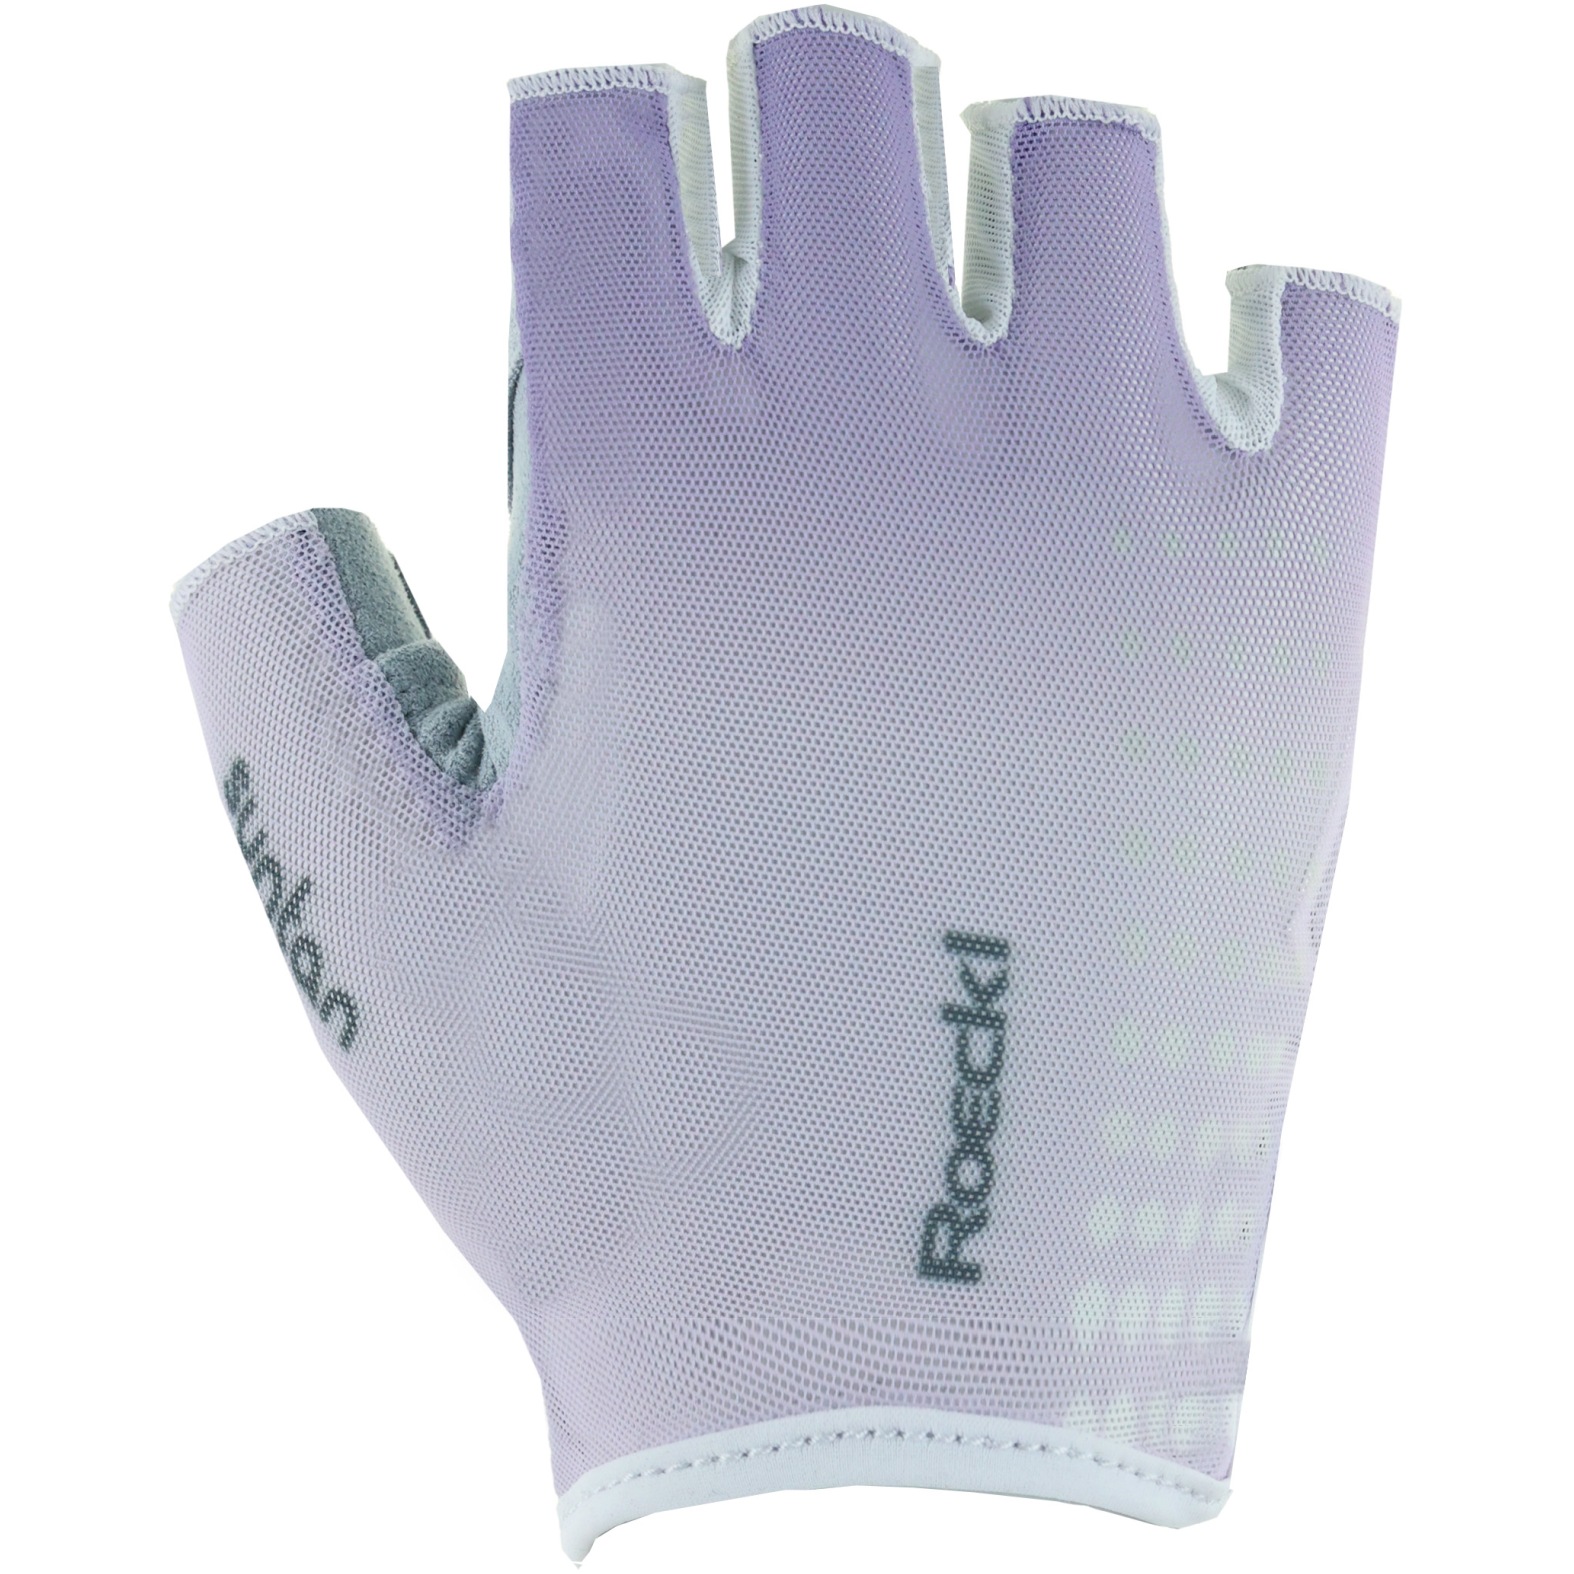 Productfoto van Roeckl Sports Istia Fietshandschoenen - lavender 4600